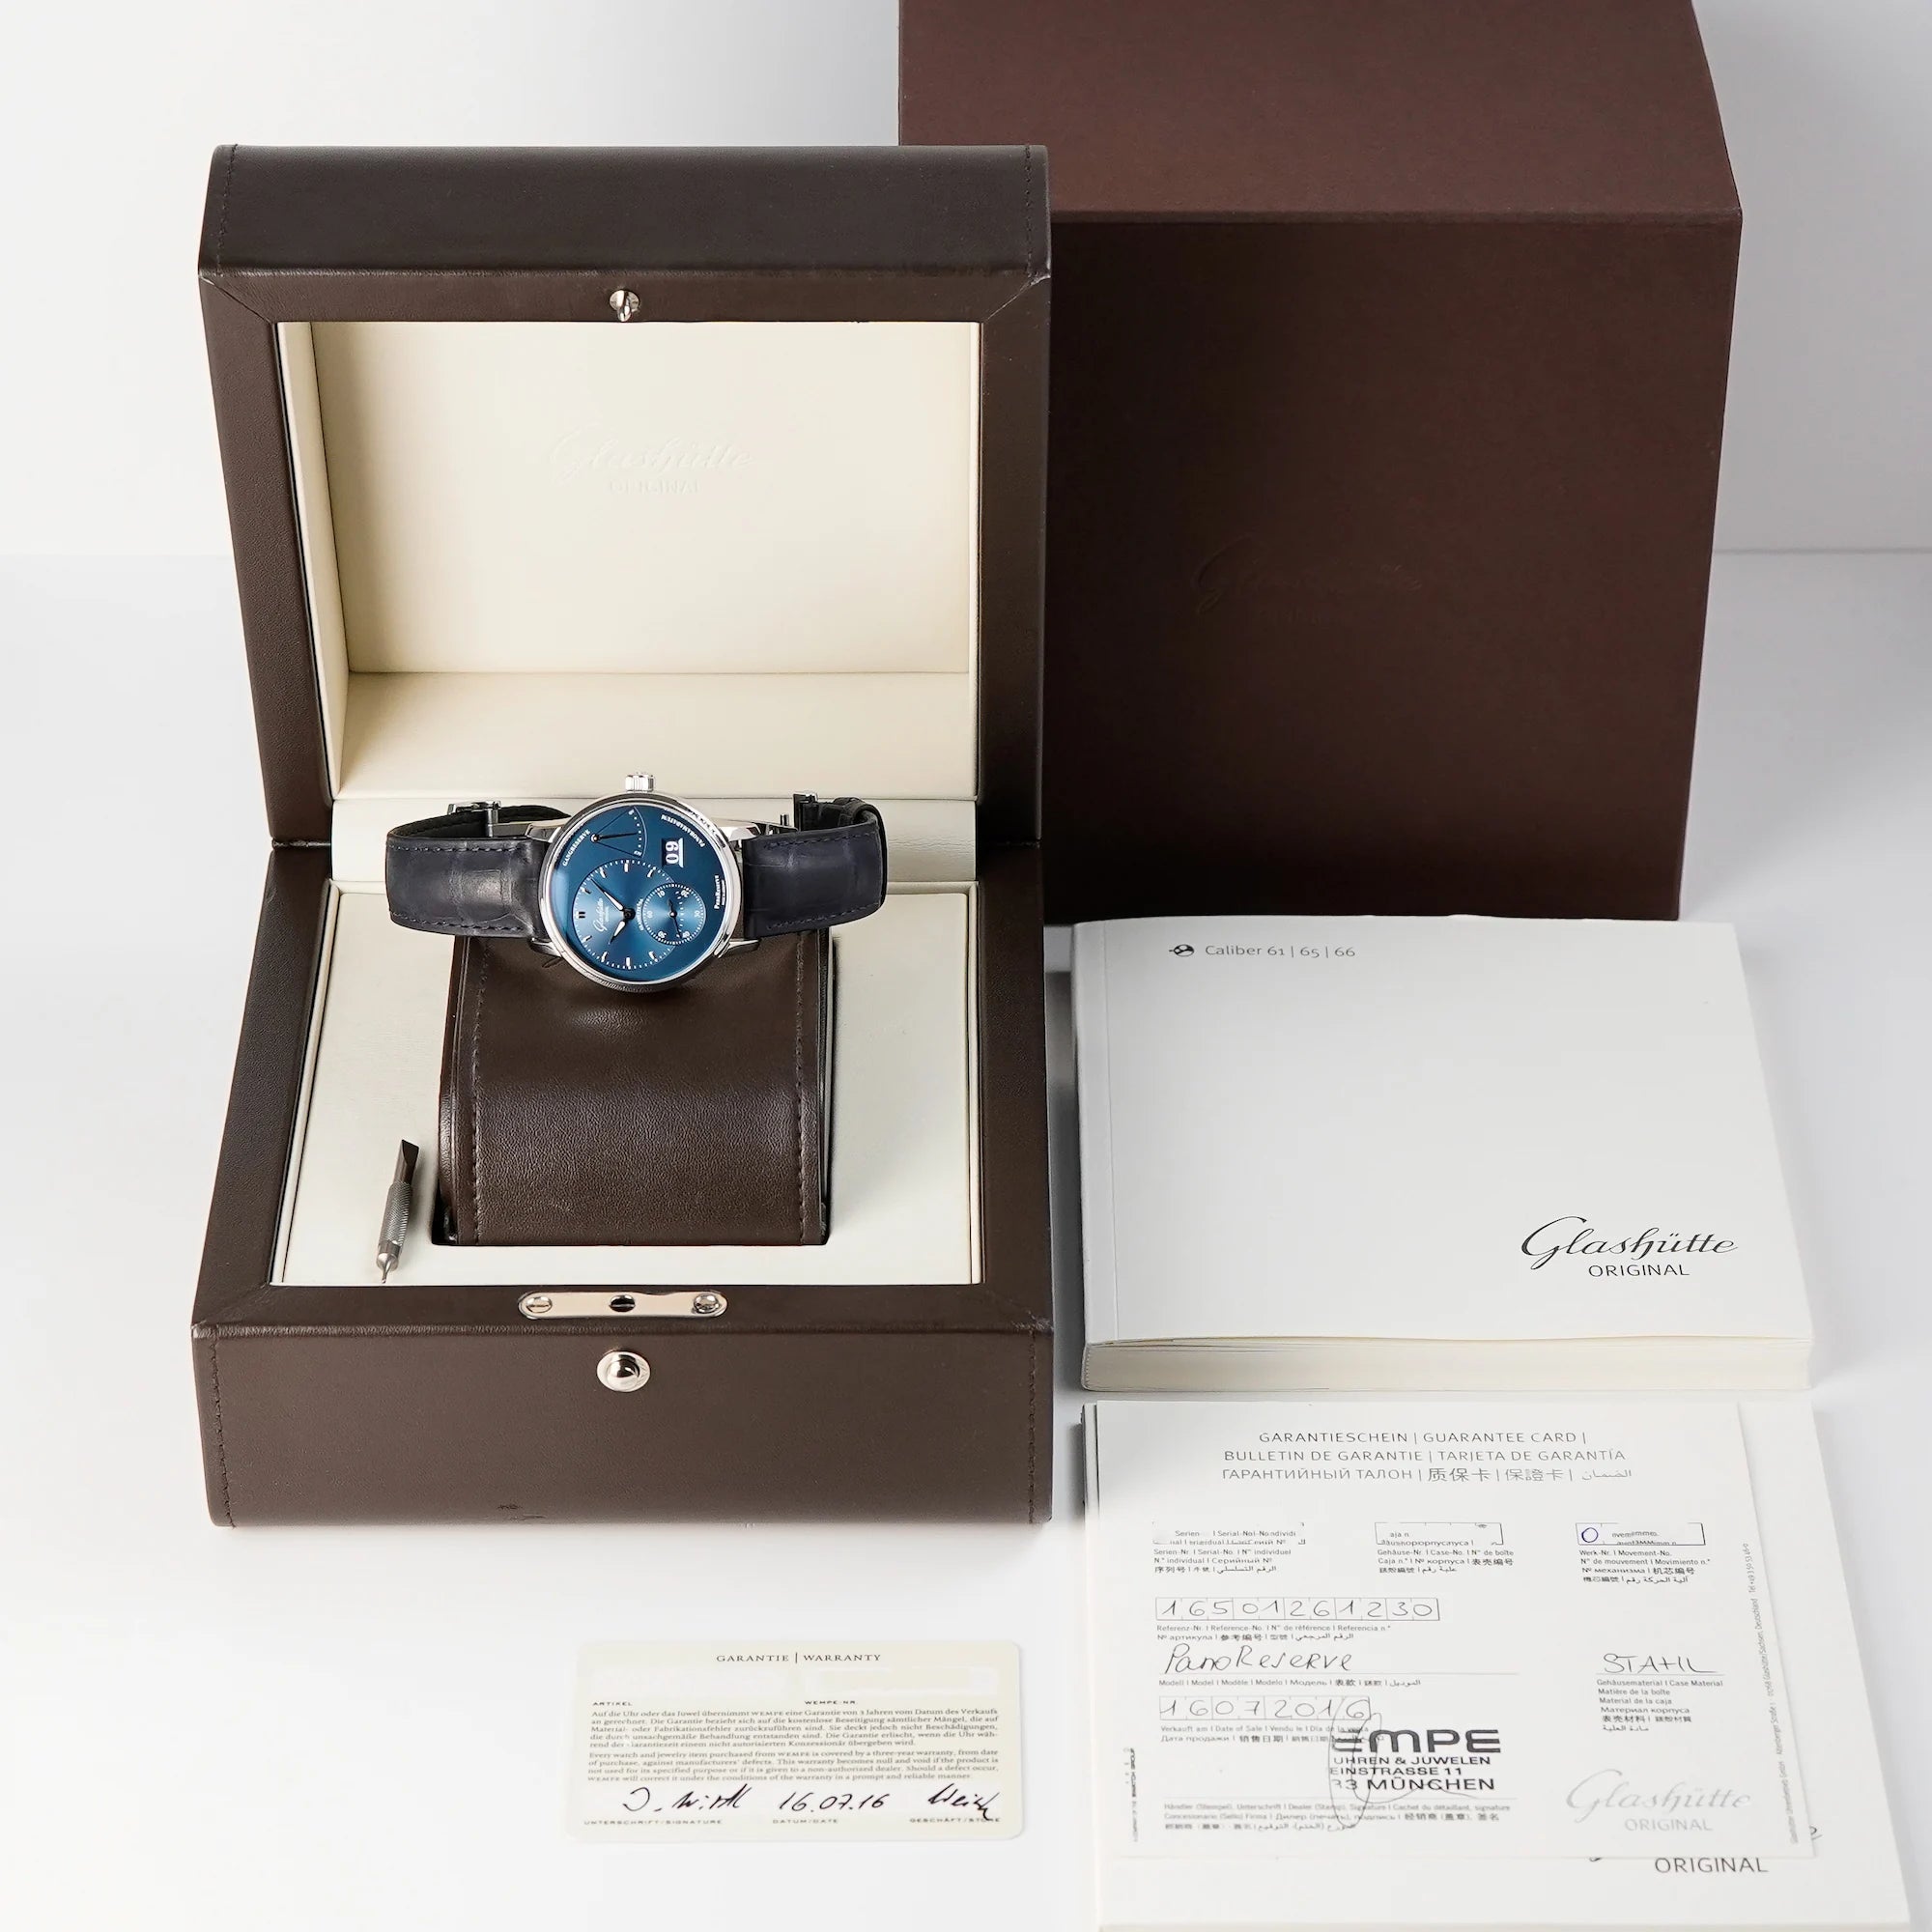 Glashuette Original Panoreserve Uhr mit blauem Zifferblatt mit gesamten Lieferumfang, bestehend aus Box, Garantiekarte und Booklet